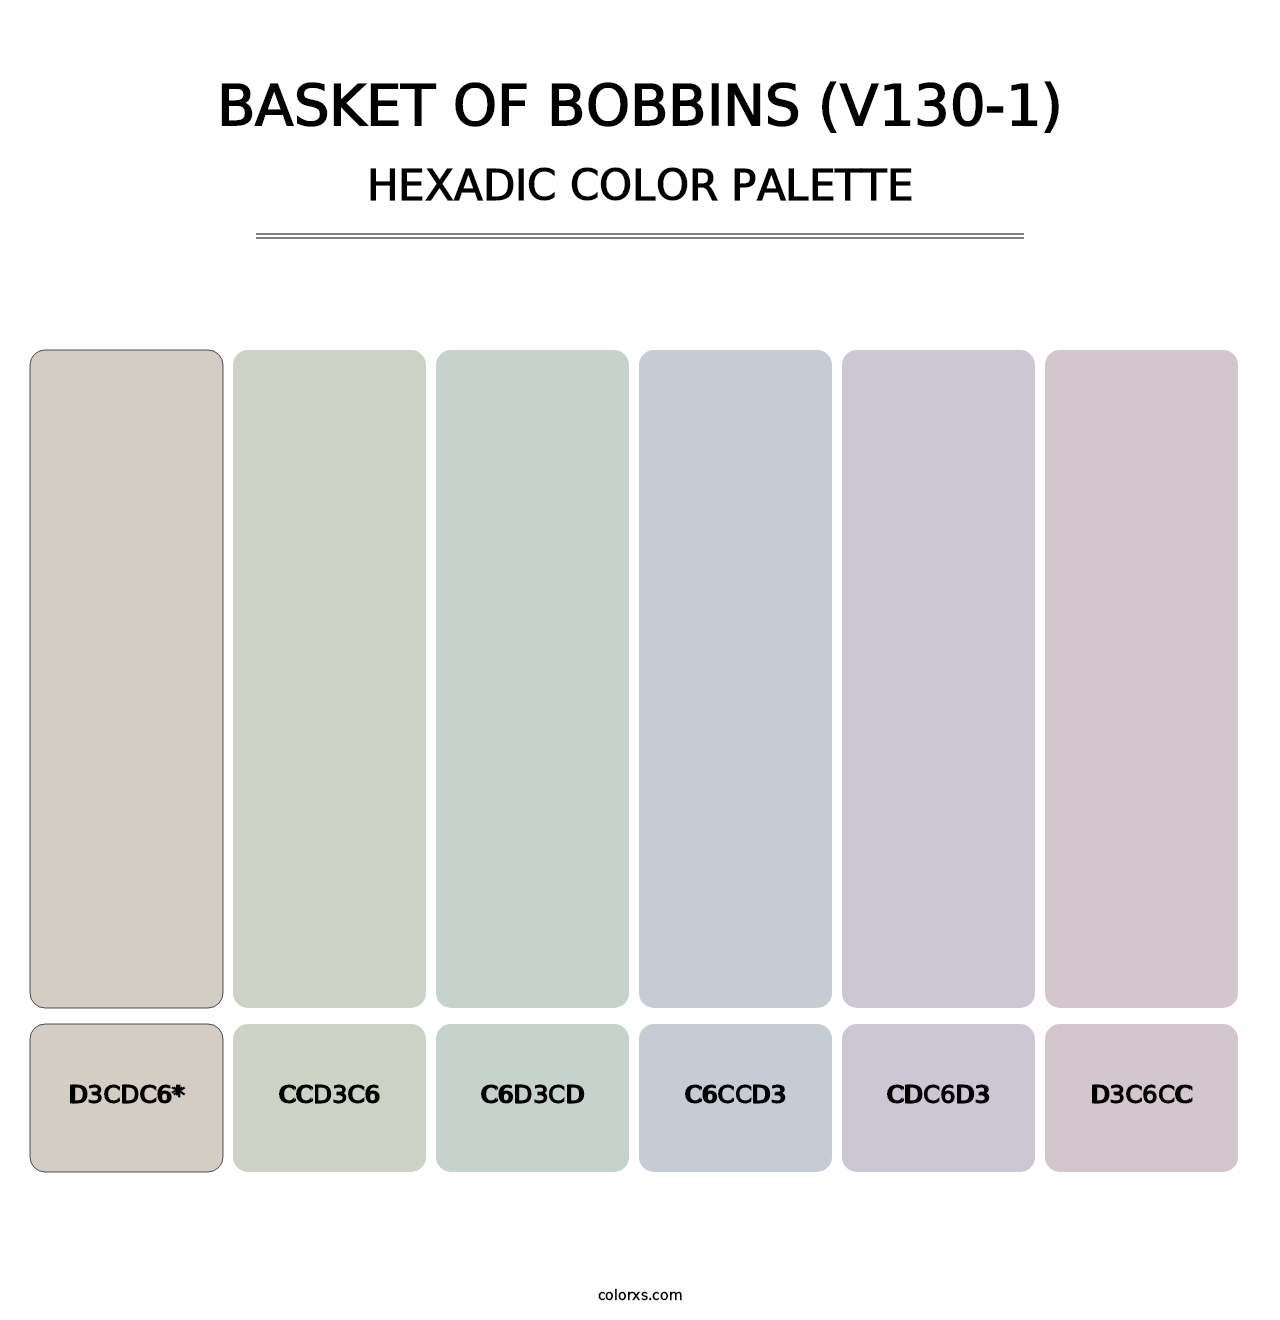 Basket of Bobbins (V130-1) - Hexadic Color Palette